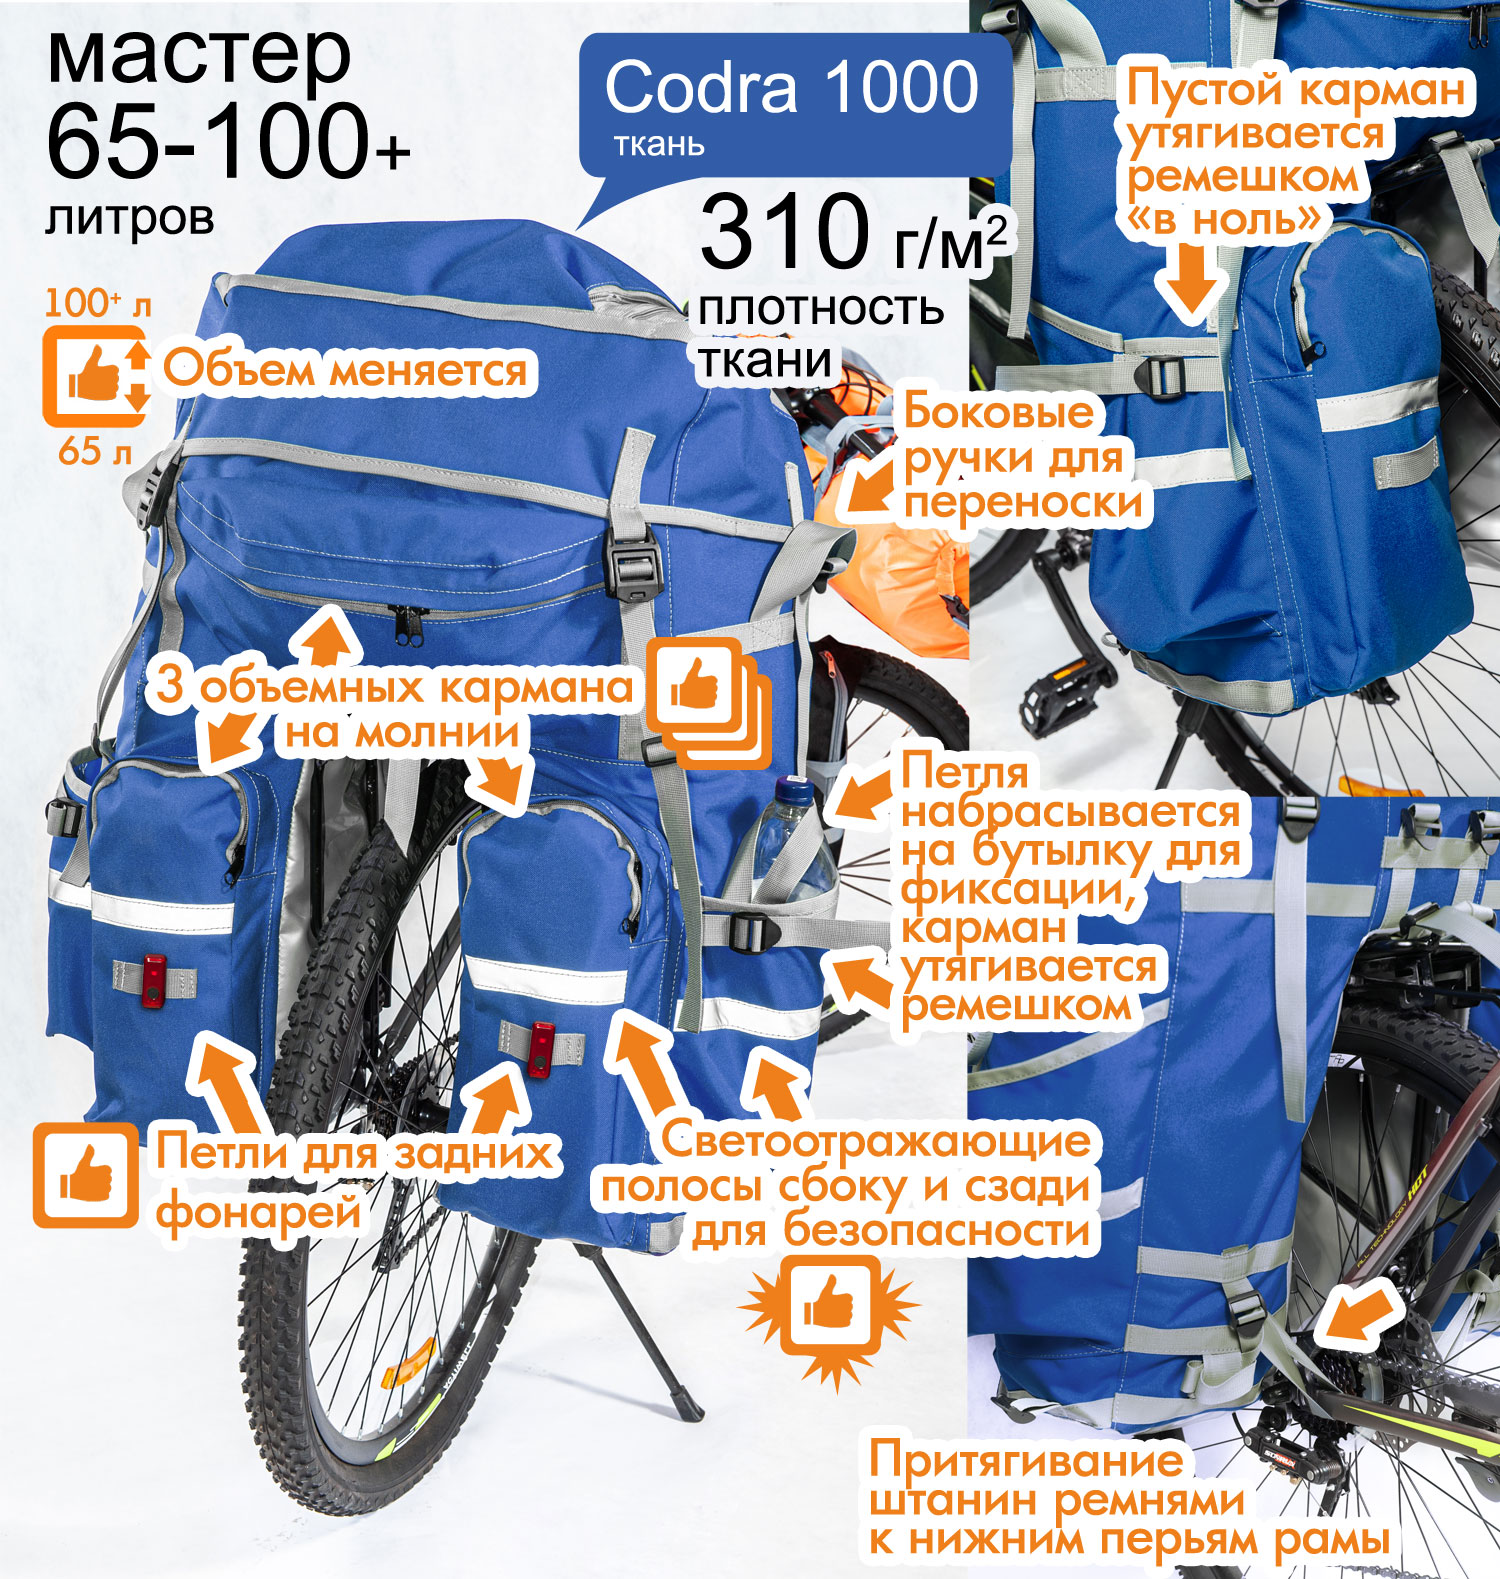 Велорюкзак на багажник Course (велоштаны) 65-100+ литров серии «Мастер», особенности конструкции